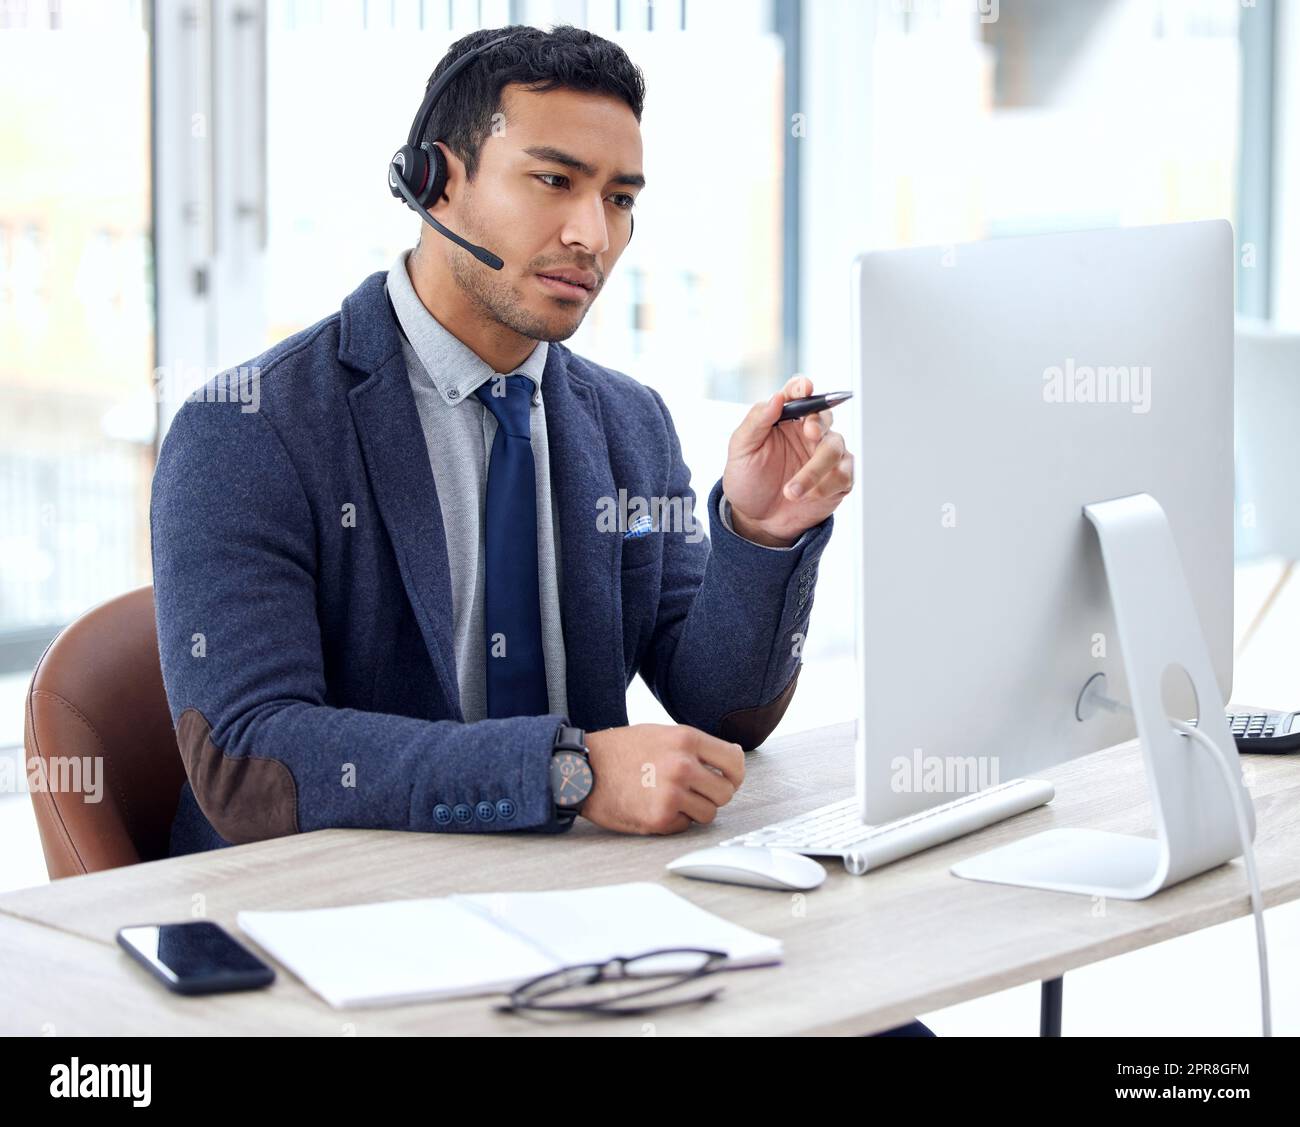 Ich verstehe, worum es geht: Ein Kundendienstmitarbeiter, der ein Headset trägt, während er an seinem Schreibtisch sitzt. Stockfoto